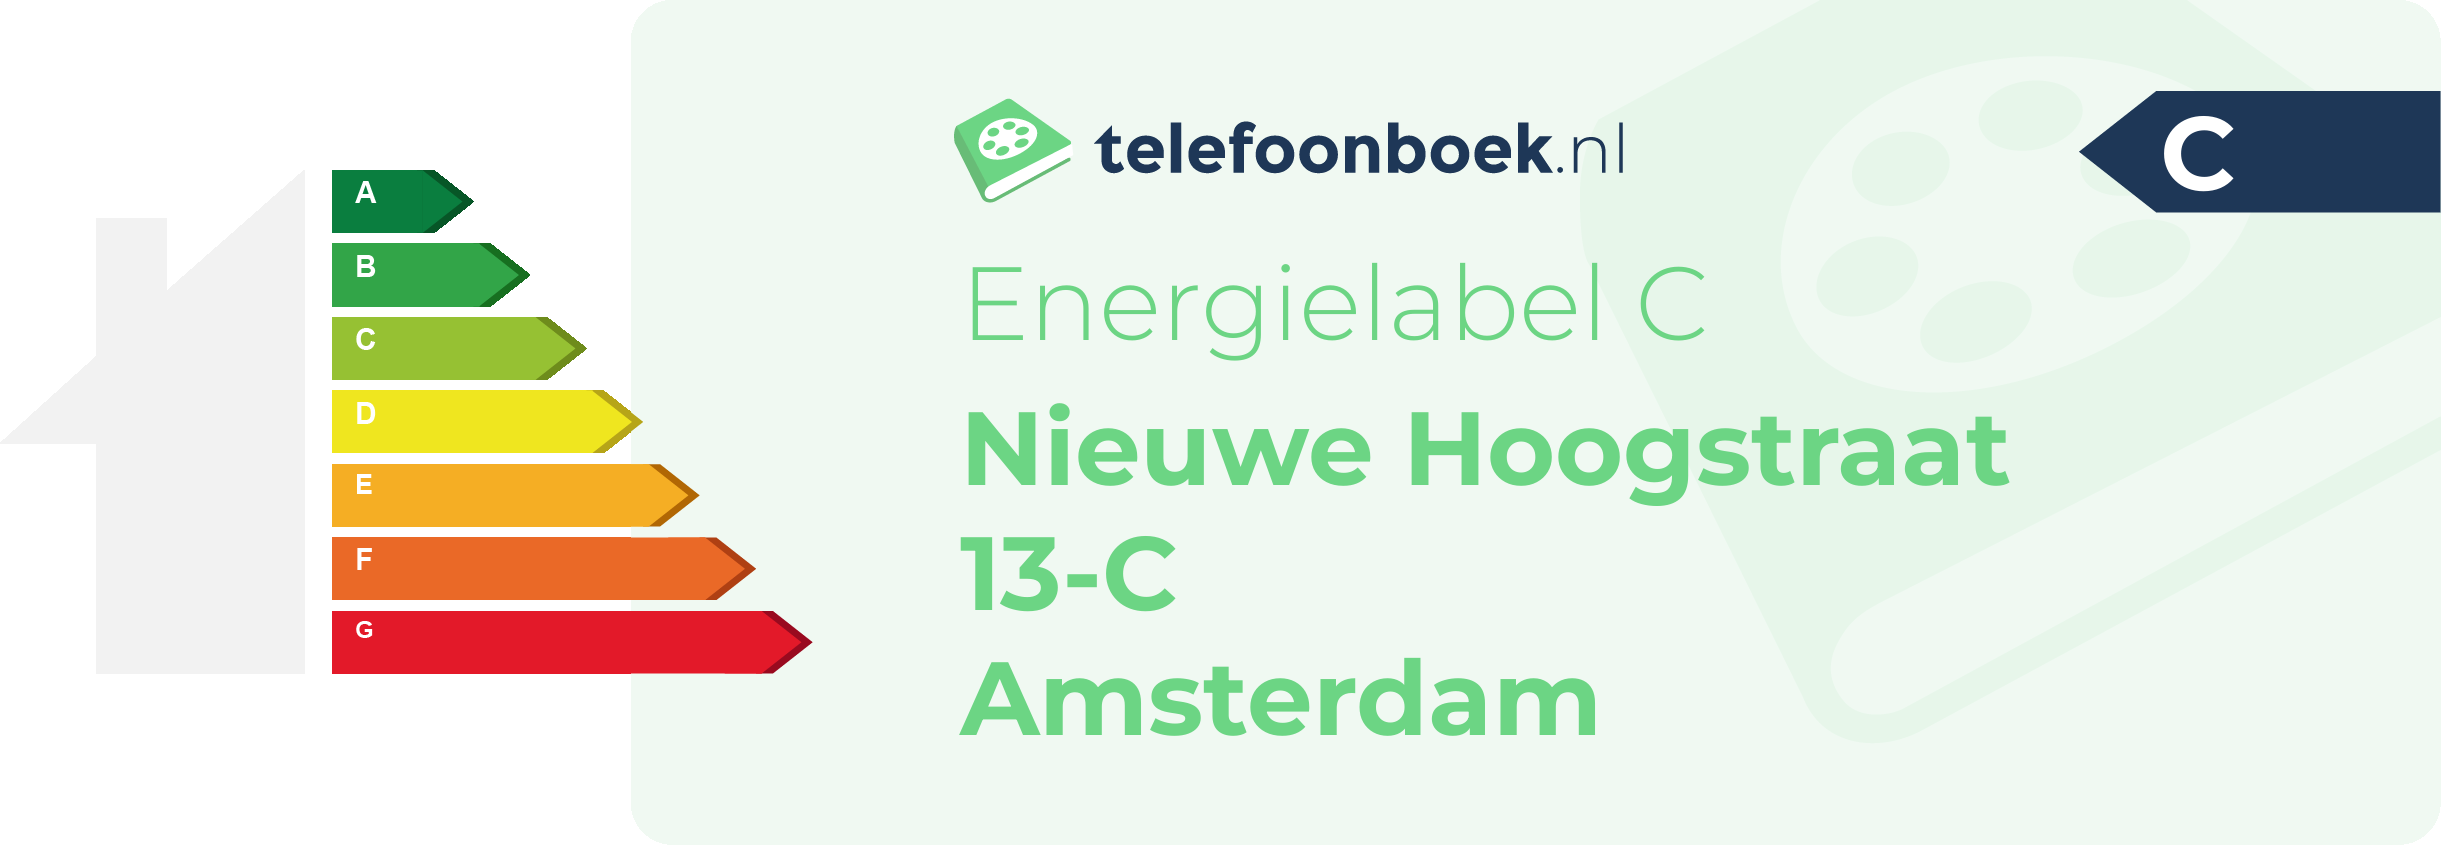 Energielabel Nieuwe Hoogstraat 13-C Amsterdam